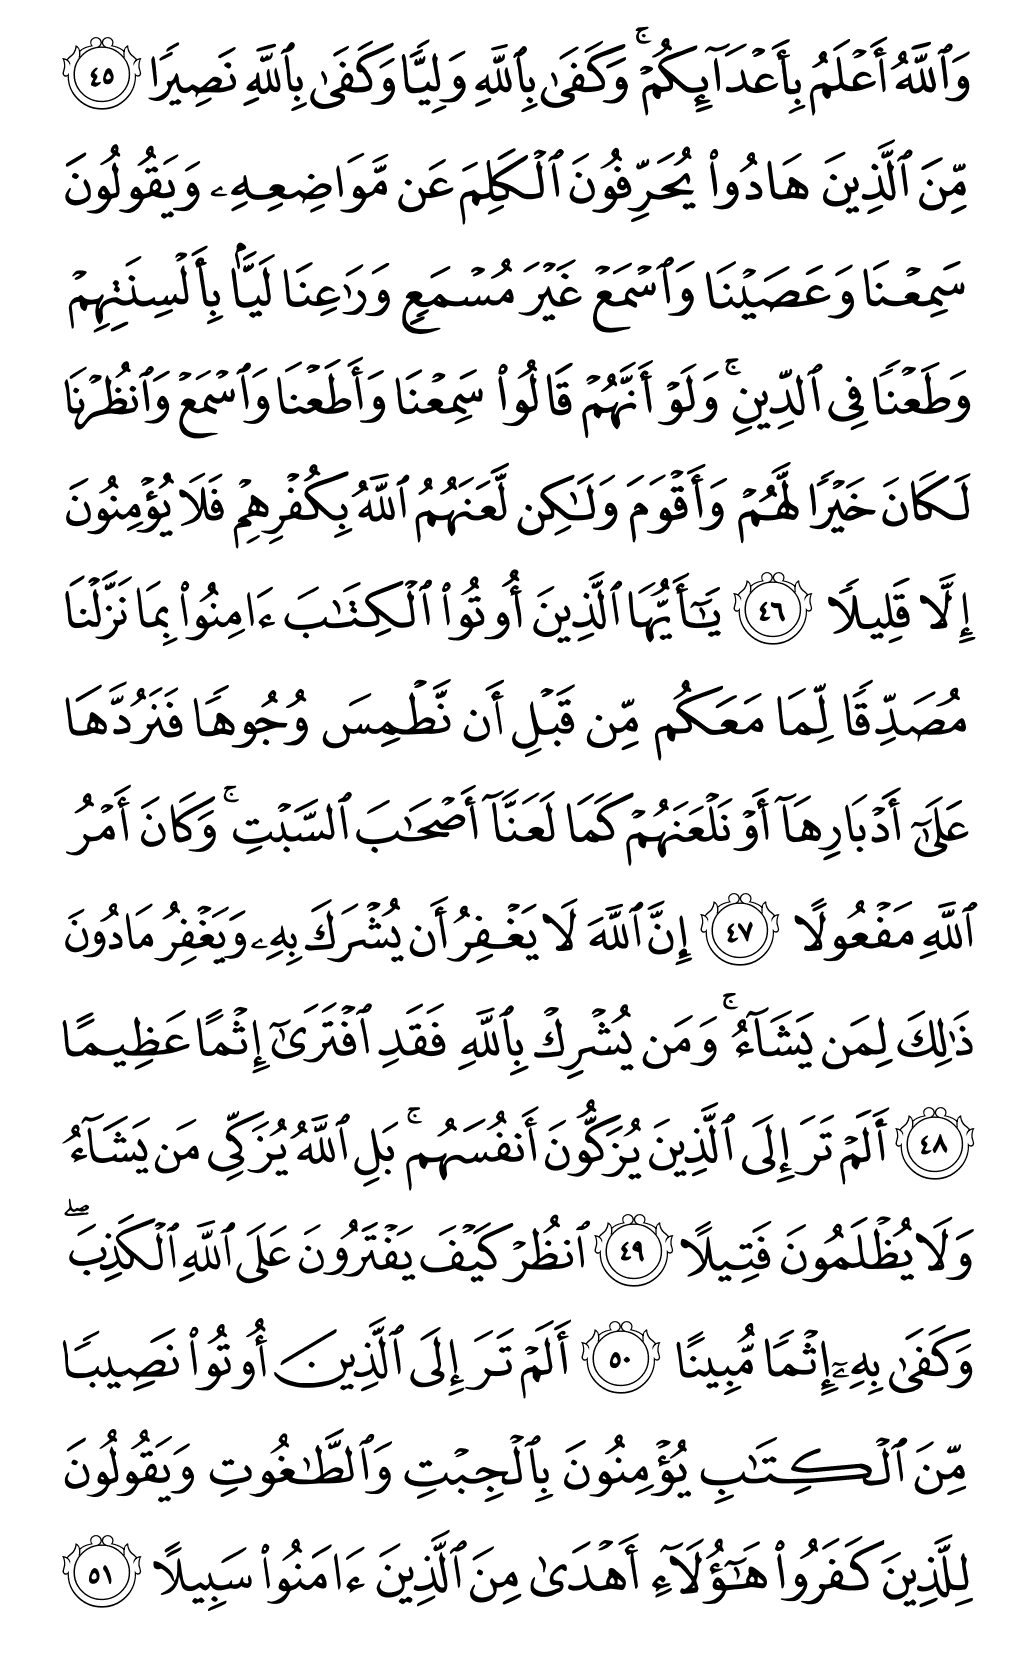 الصفحة رقم 86 من القرآن الكريم